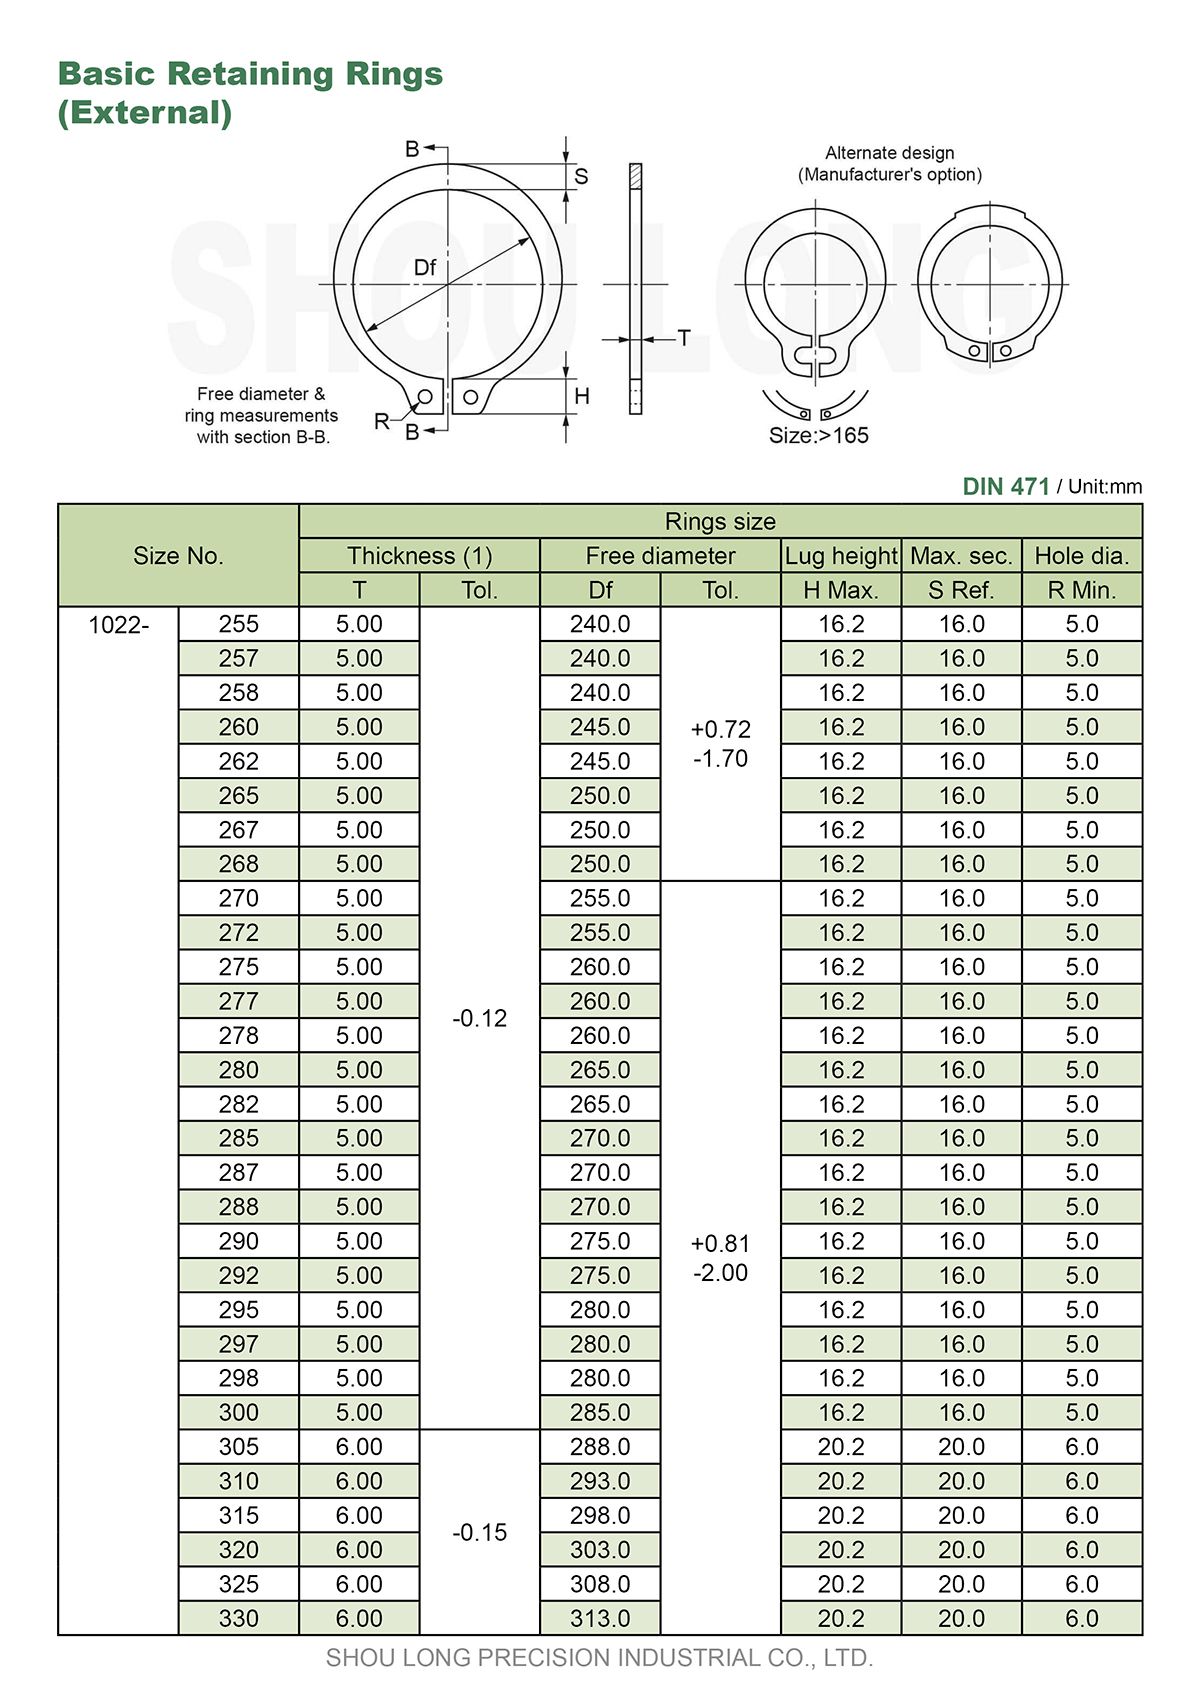 Especificação de Anéis de Retenção Básicos Métricos para Eixo DIN471-6